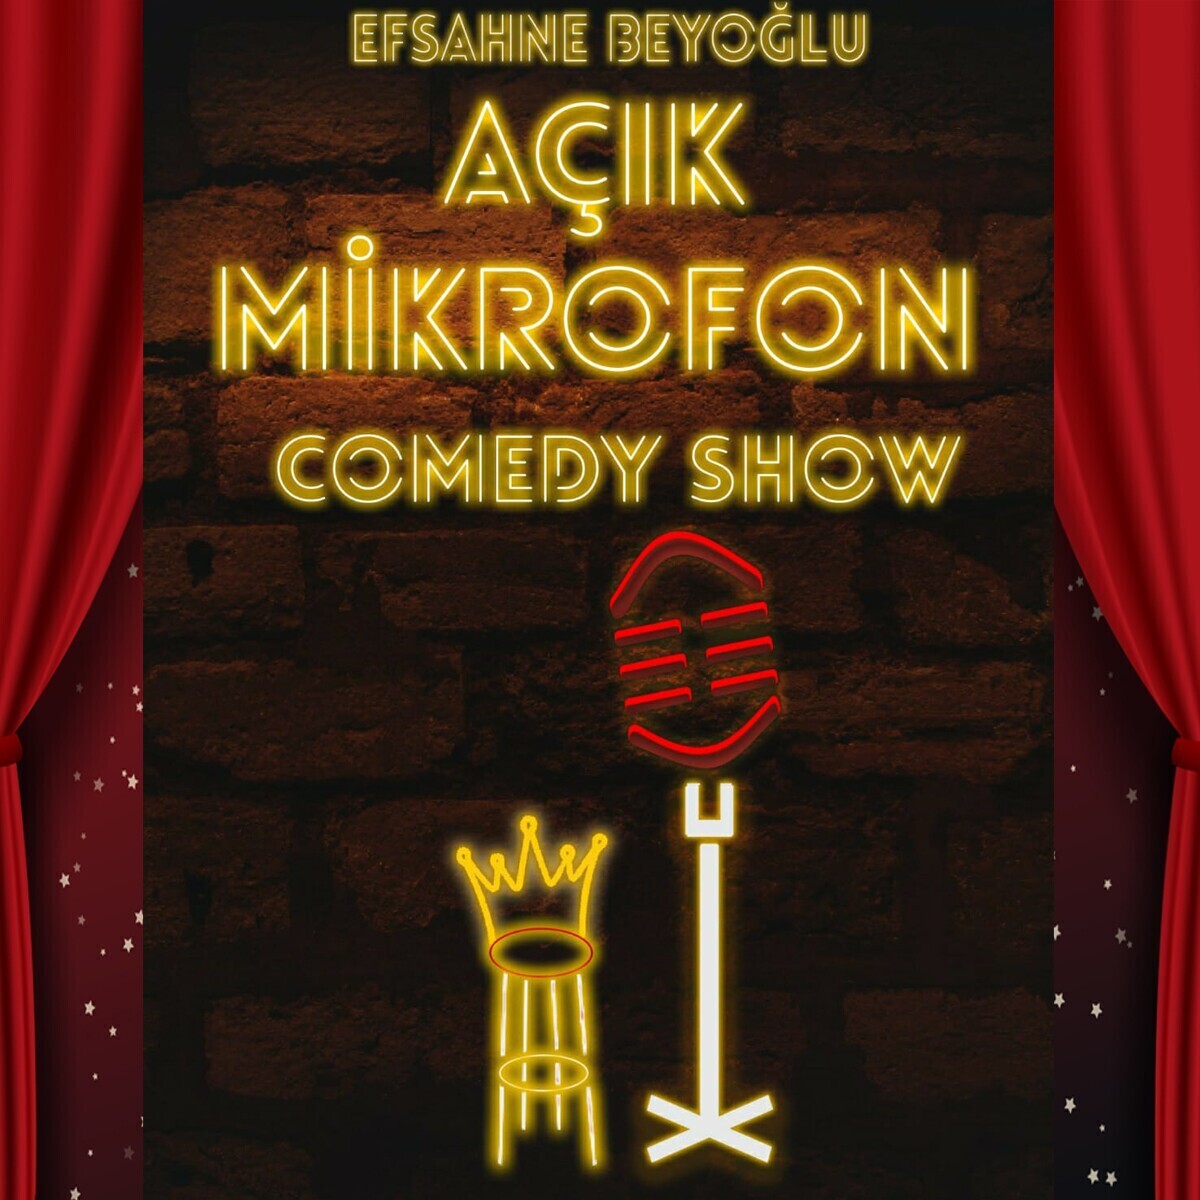 'Açık Milkrofon Comedy Show' Etkinlik Bileti